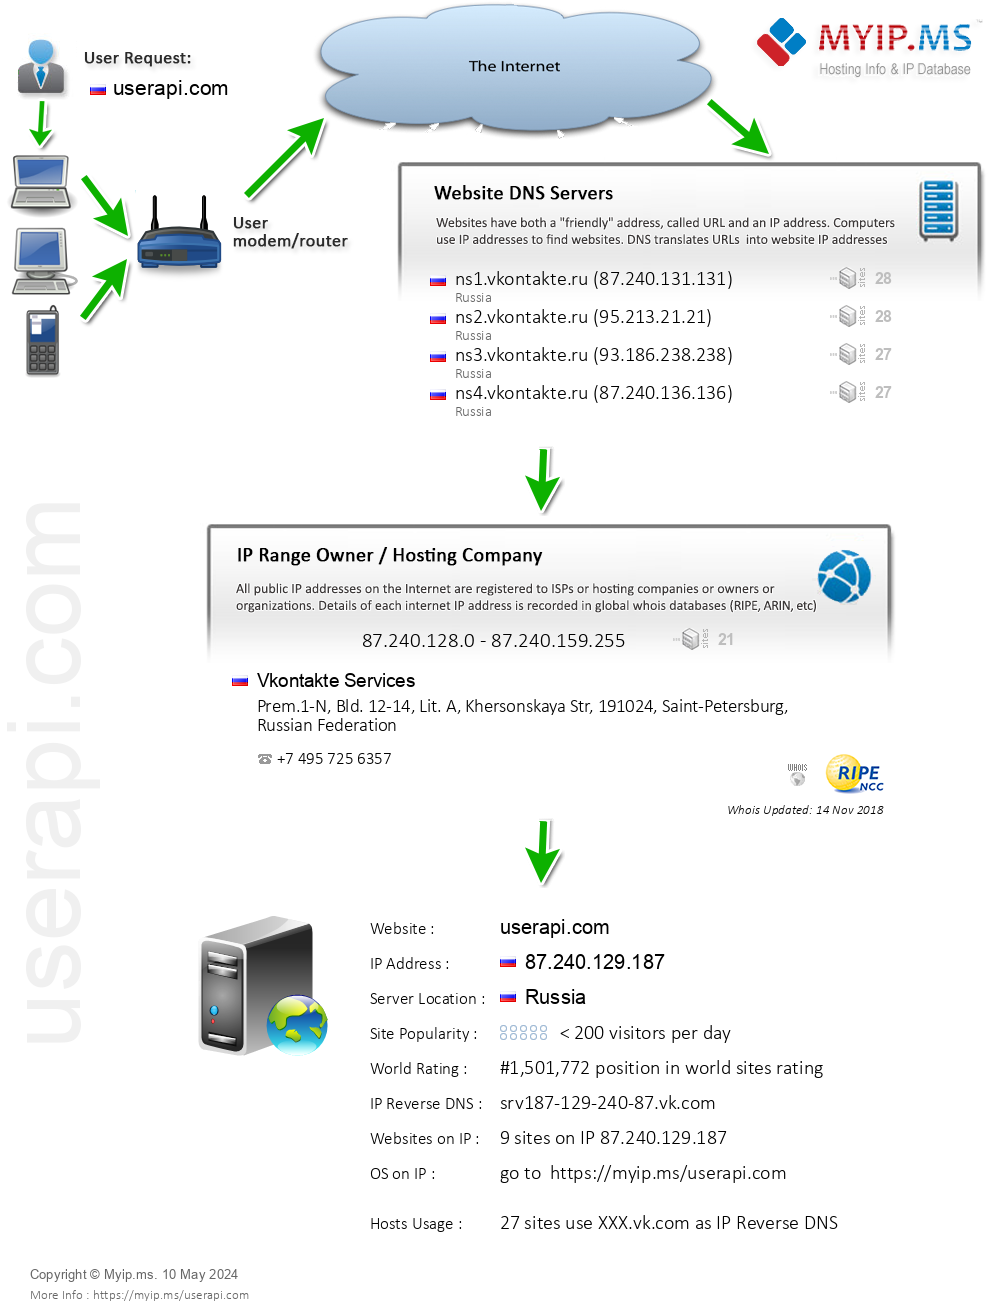 Userapi.com - Website Hosting Visual IP Diagram